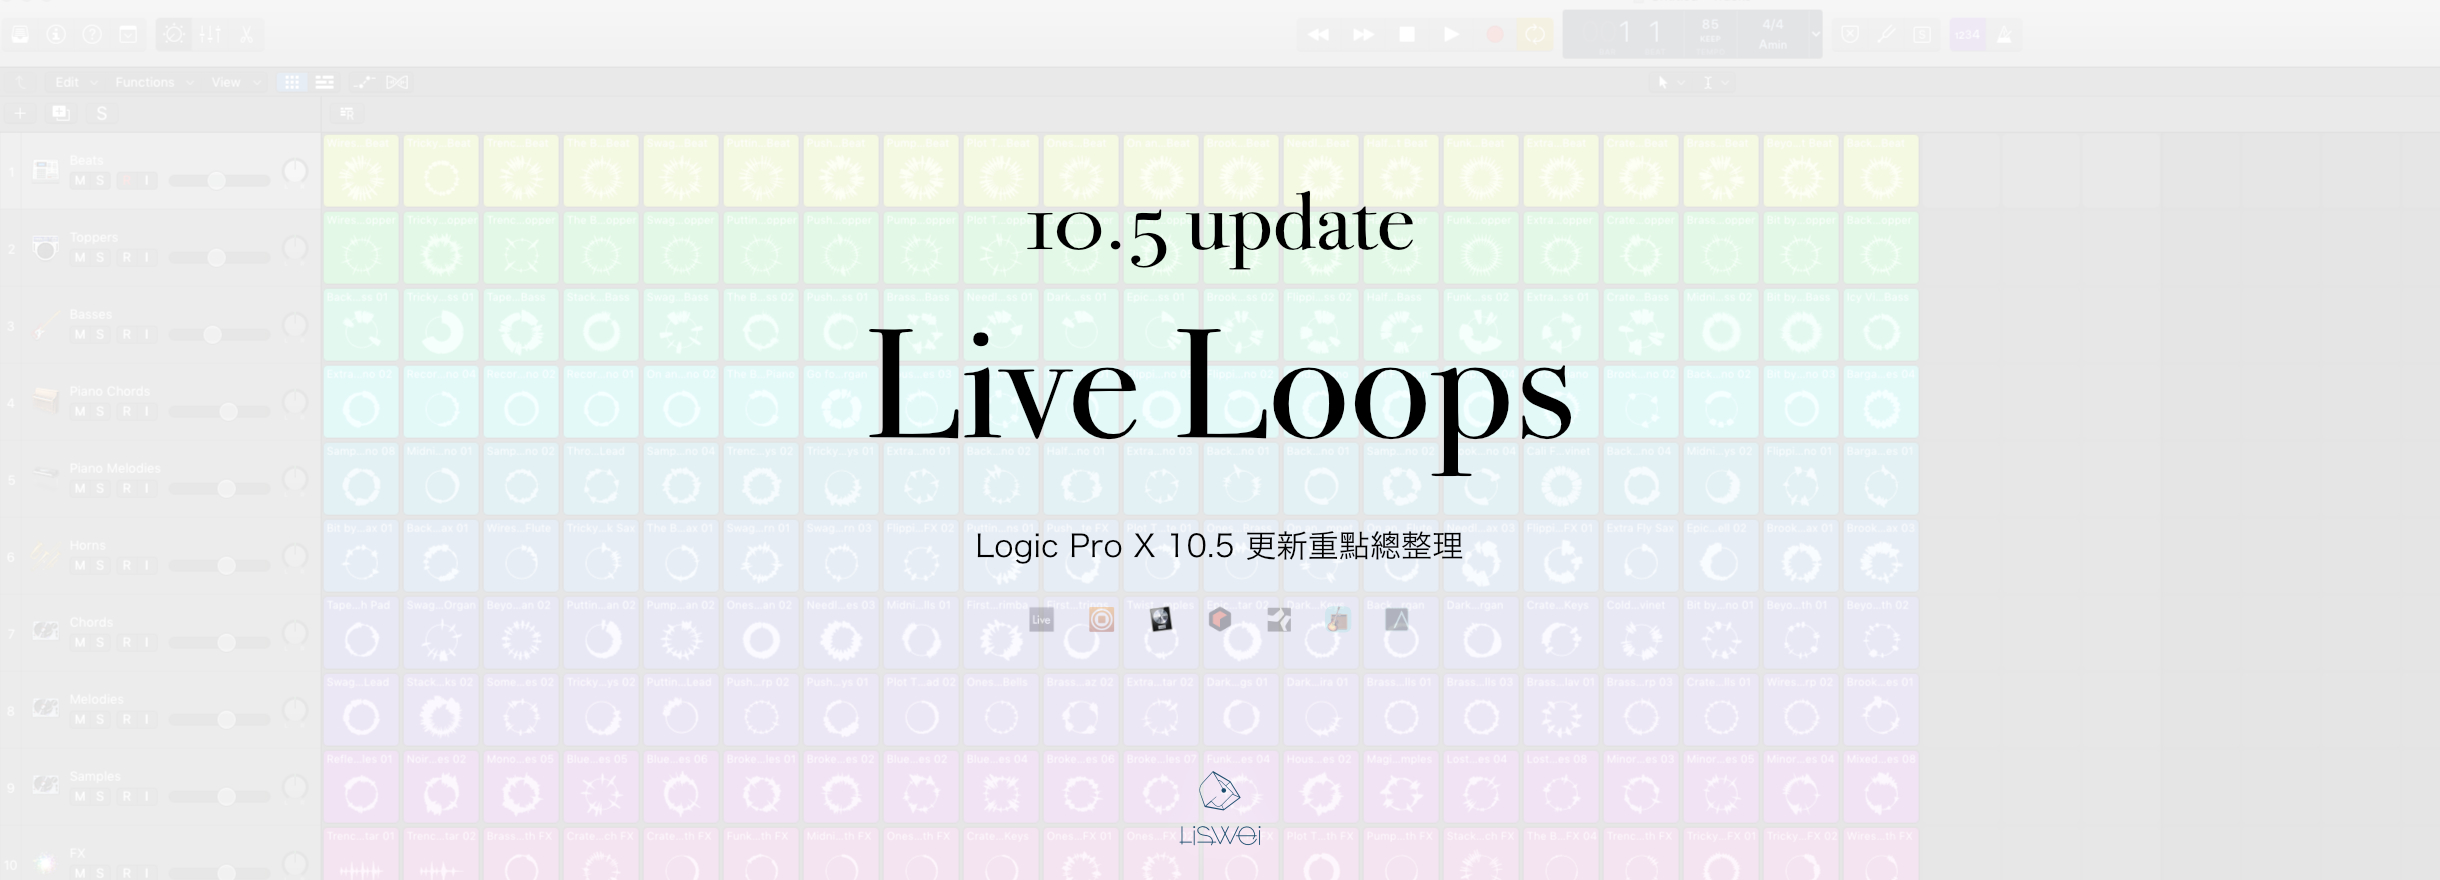 Logic Pro X 10.5 更新重點 Live Loops